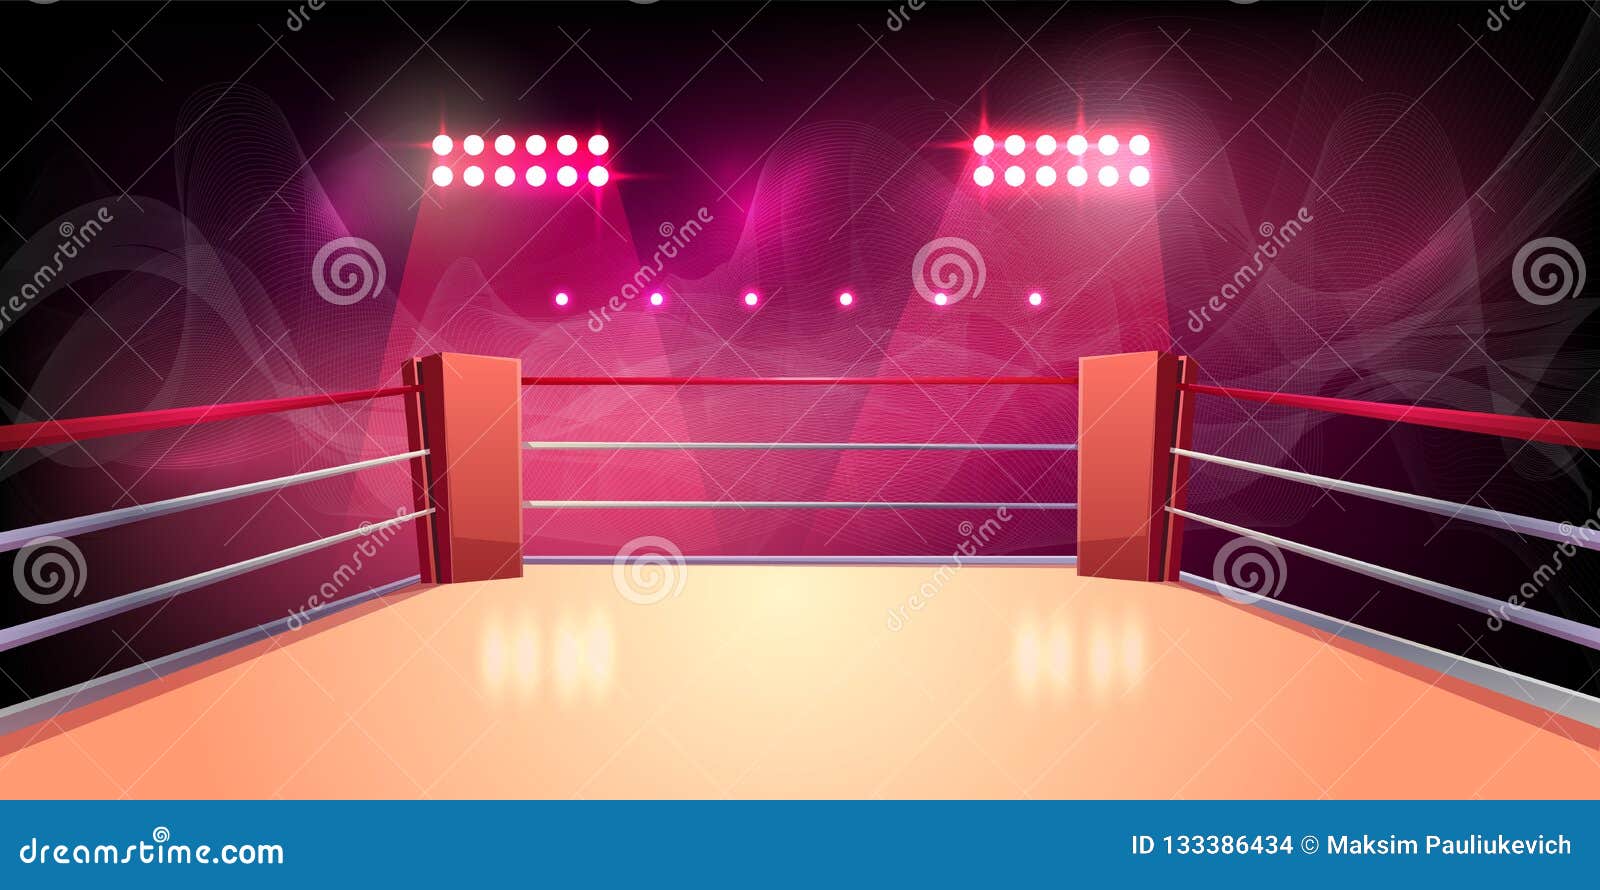  background of boxing ring, illuminated arena